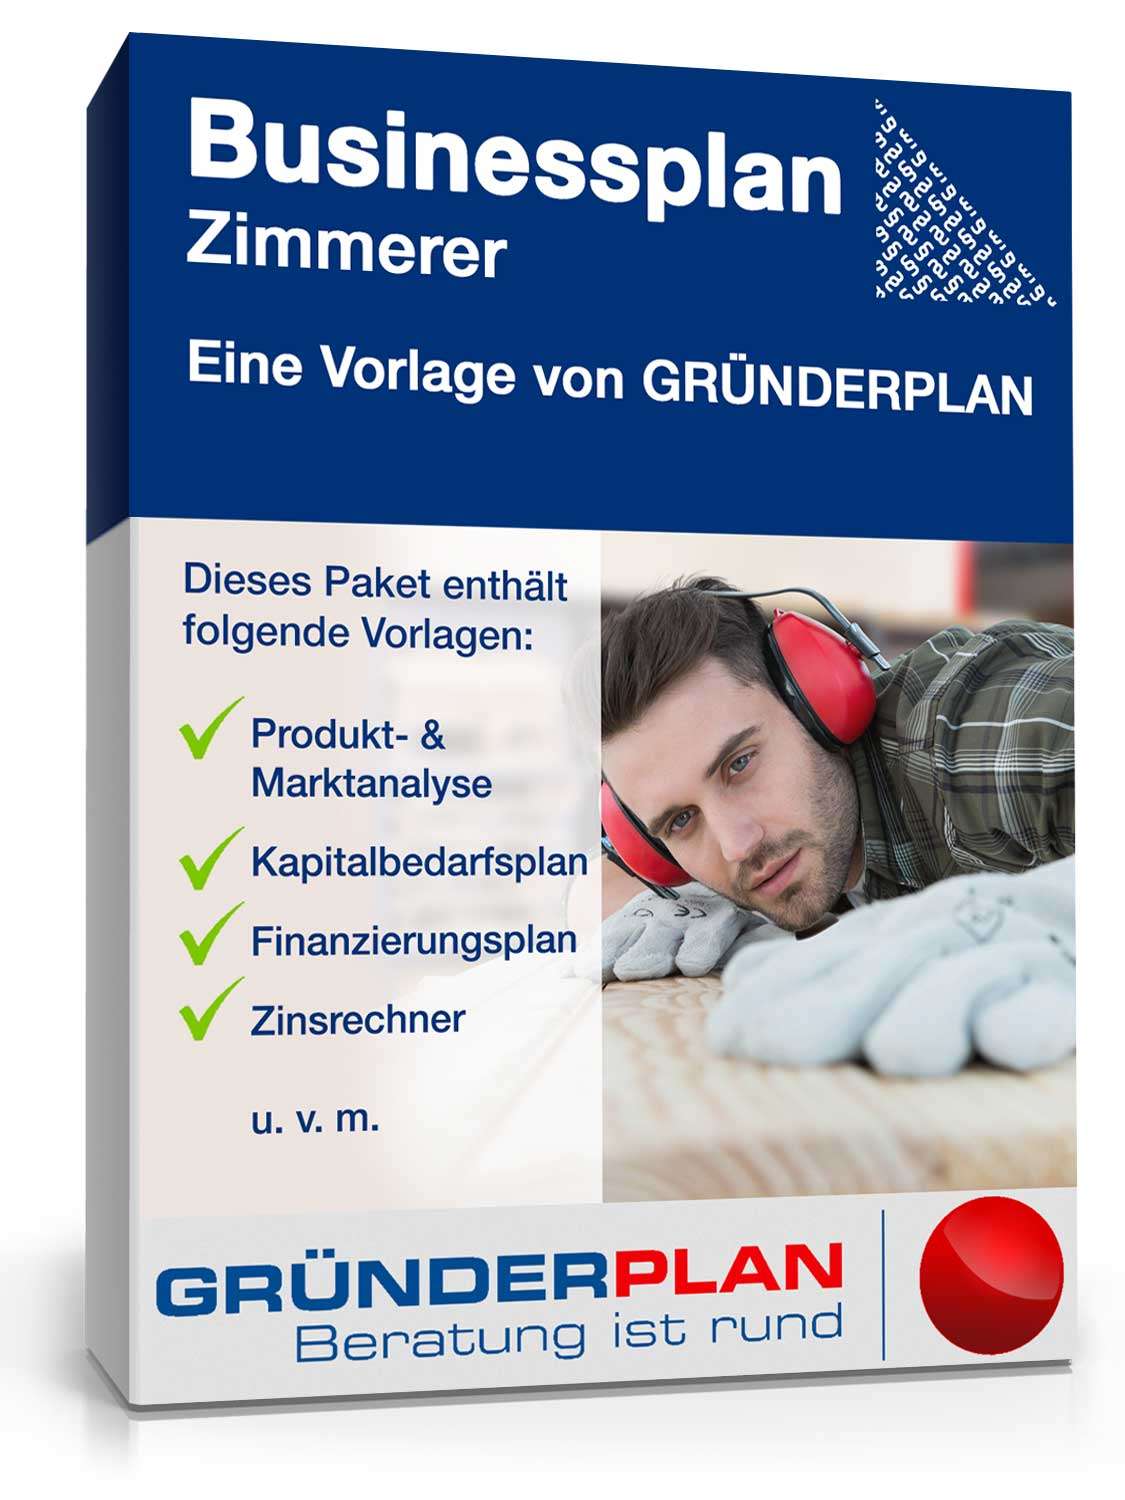 Hauptbild des Produkts: Businessplan Zimmerer von Gründerplan